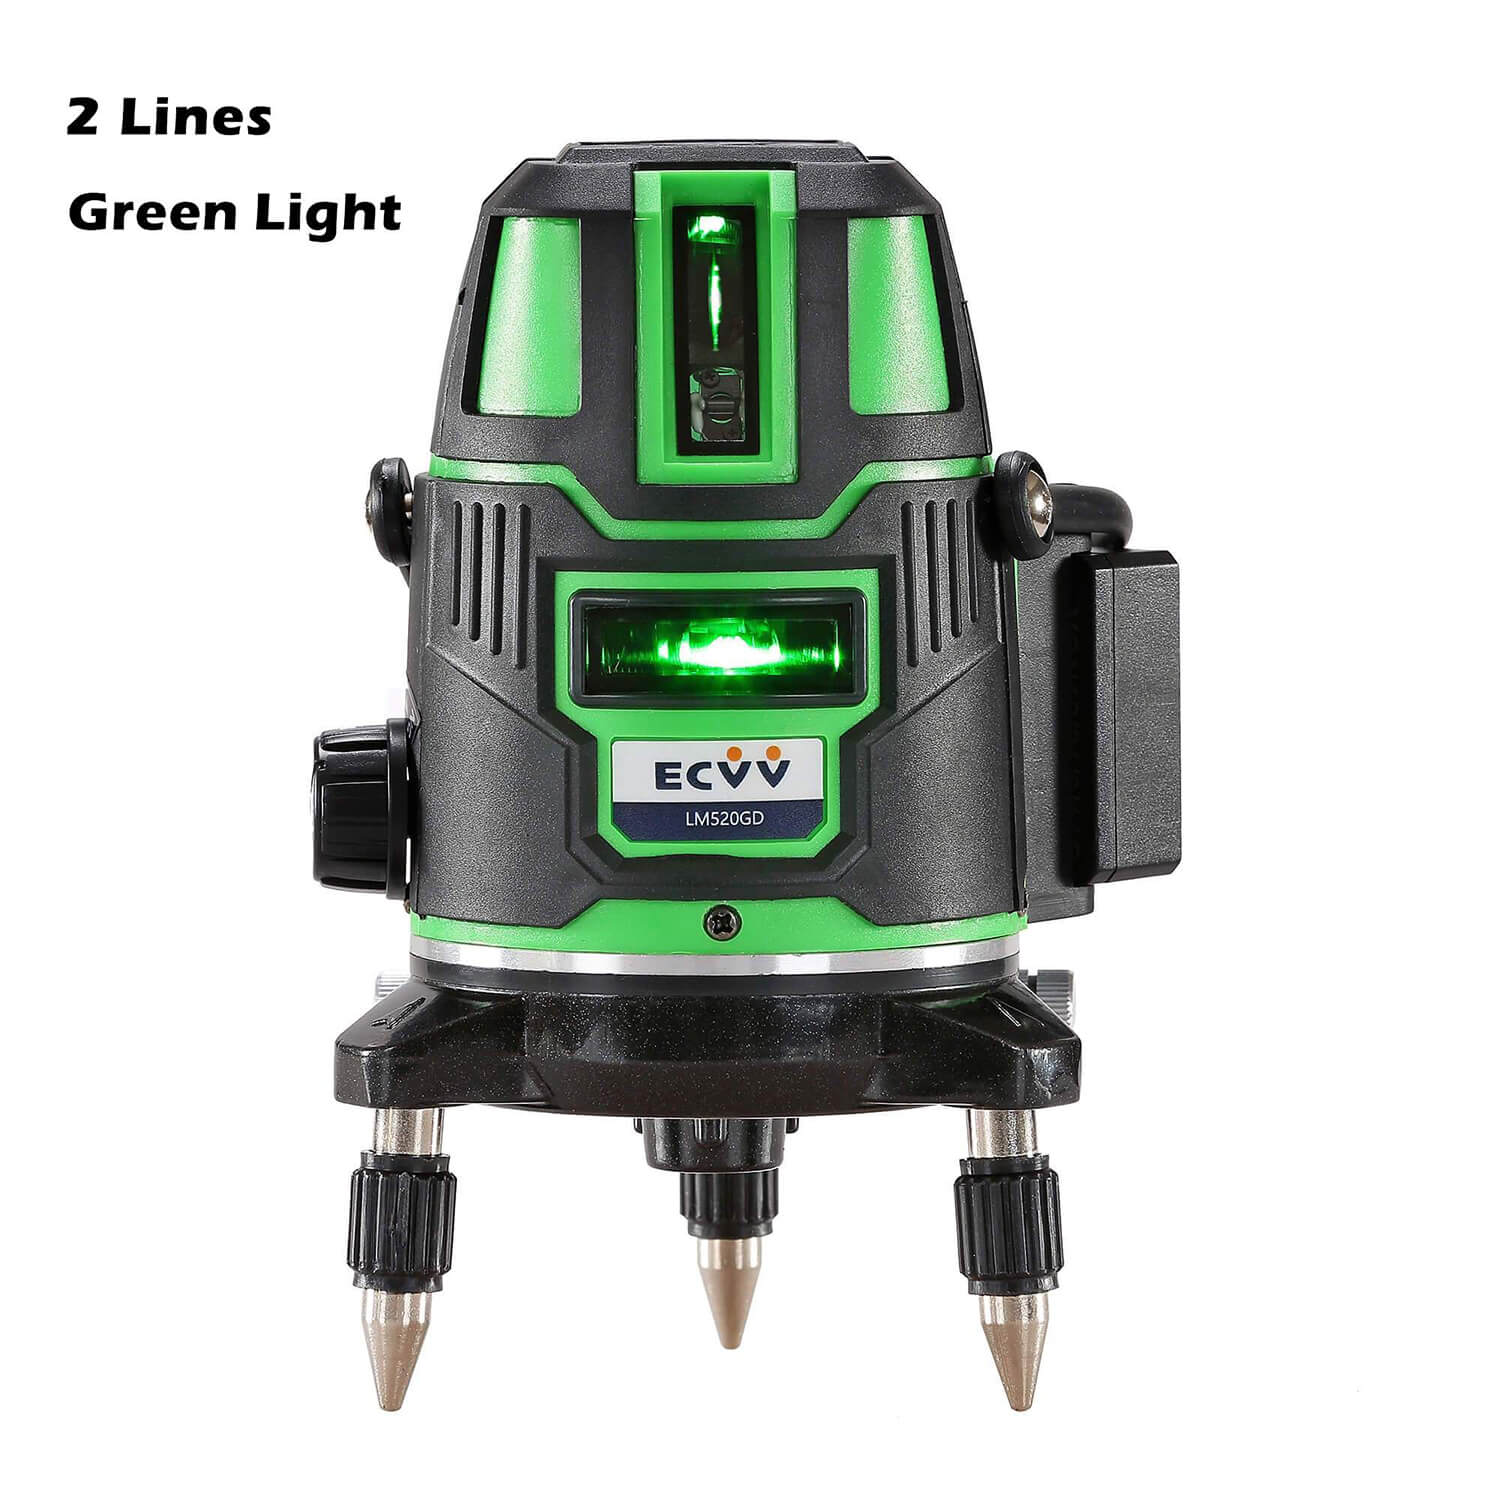 ECVV Laser Level Green Light Professional Cross Marking; ECVV SA –